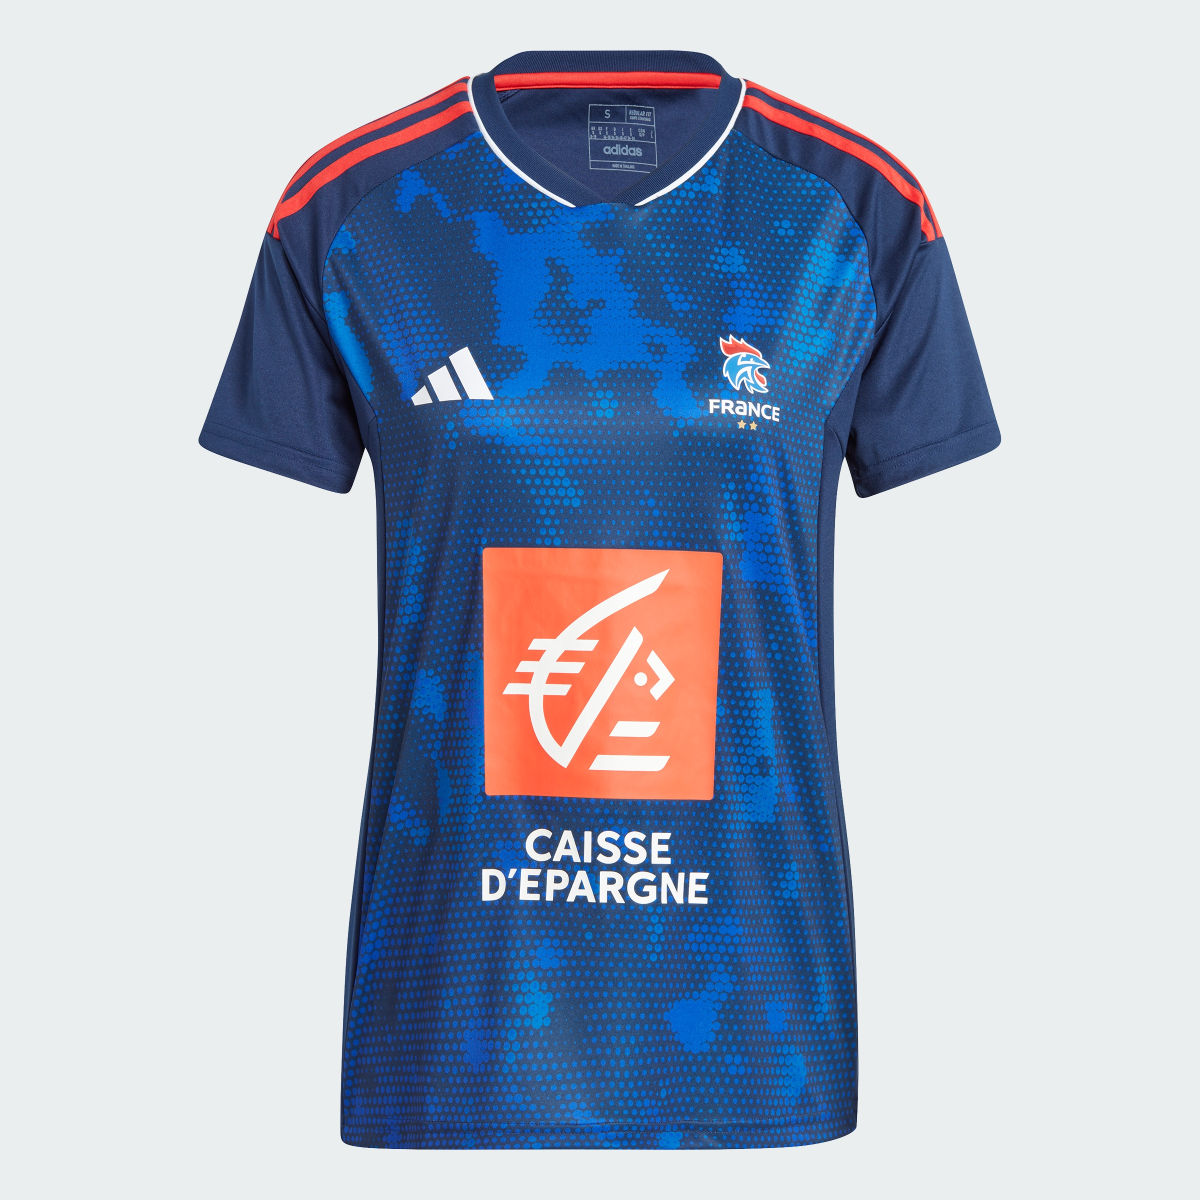 Adidas France AEROREADY Handball Jersey. 5